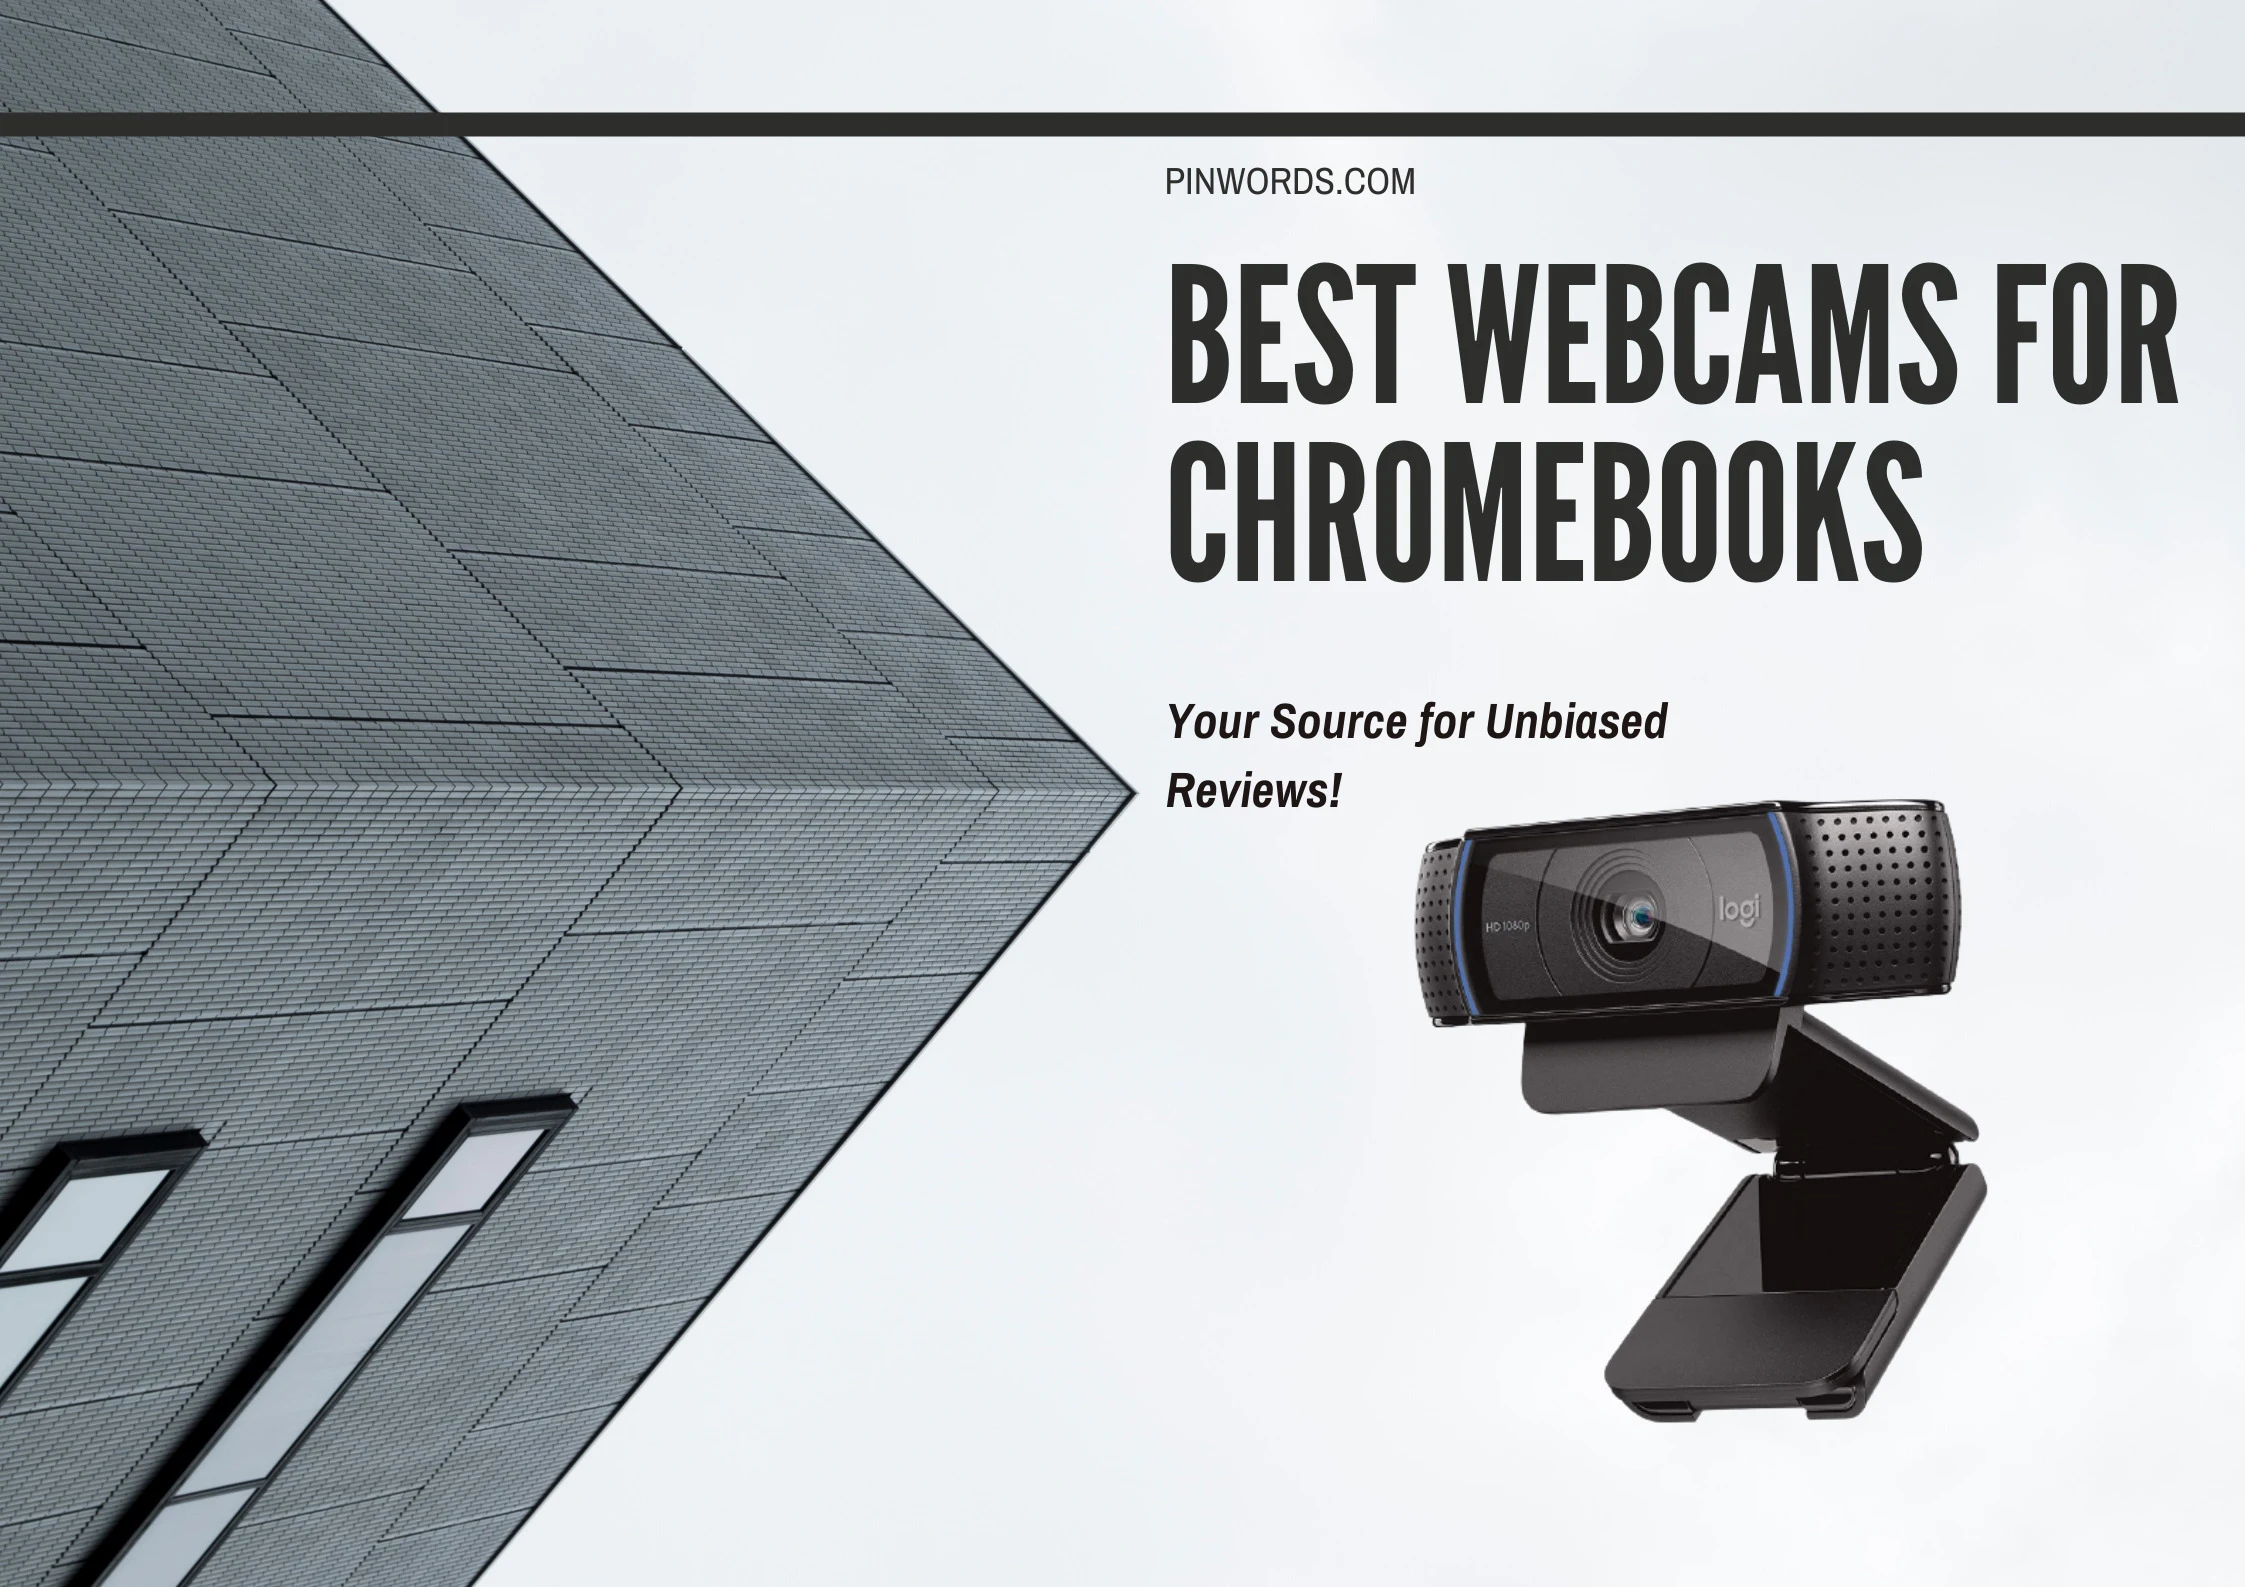  Best Webcams For Chromebooks Reviews 